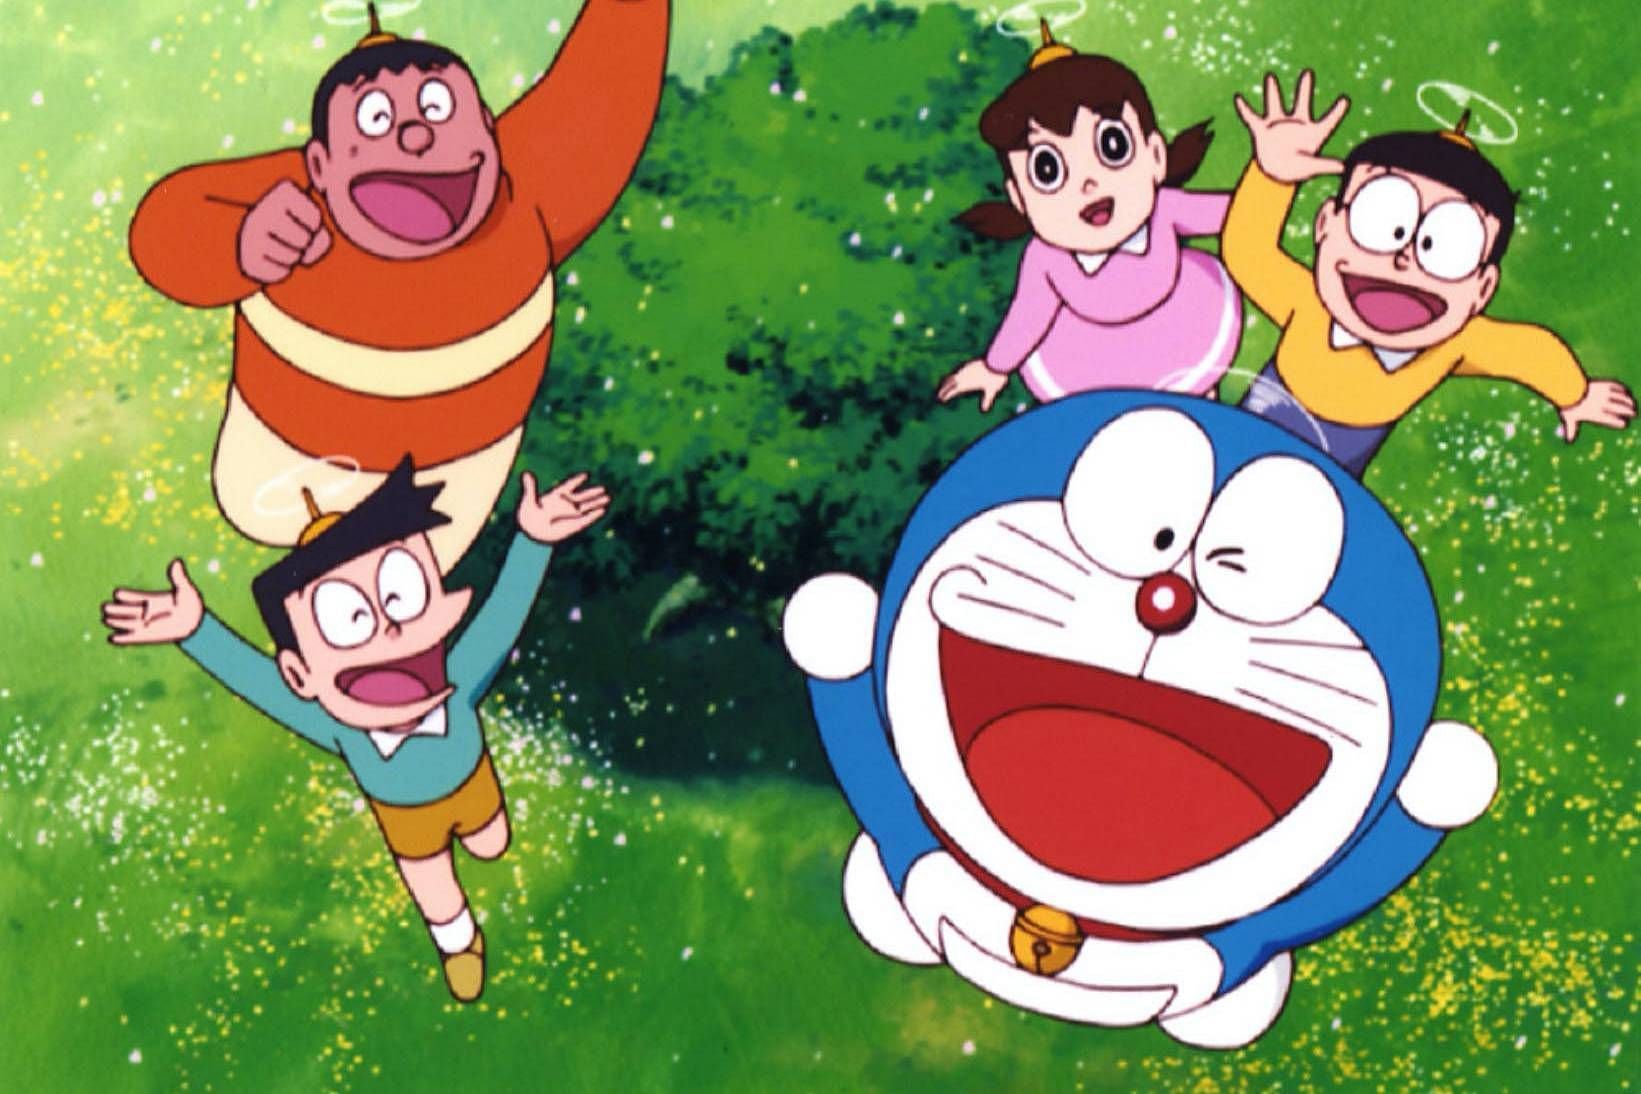 Doraemon (Image via Shin-Ei Animation)